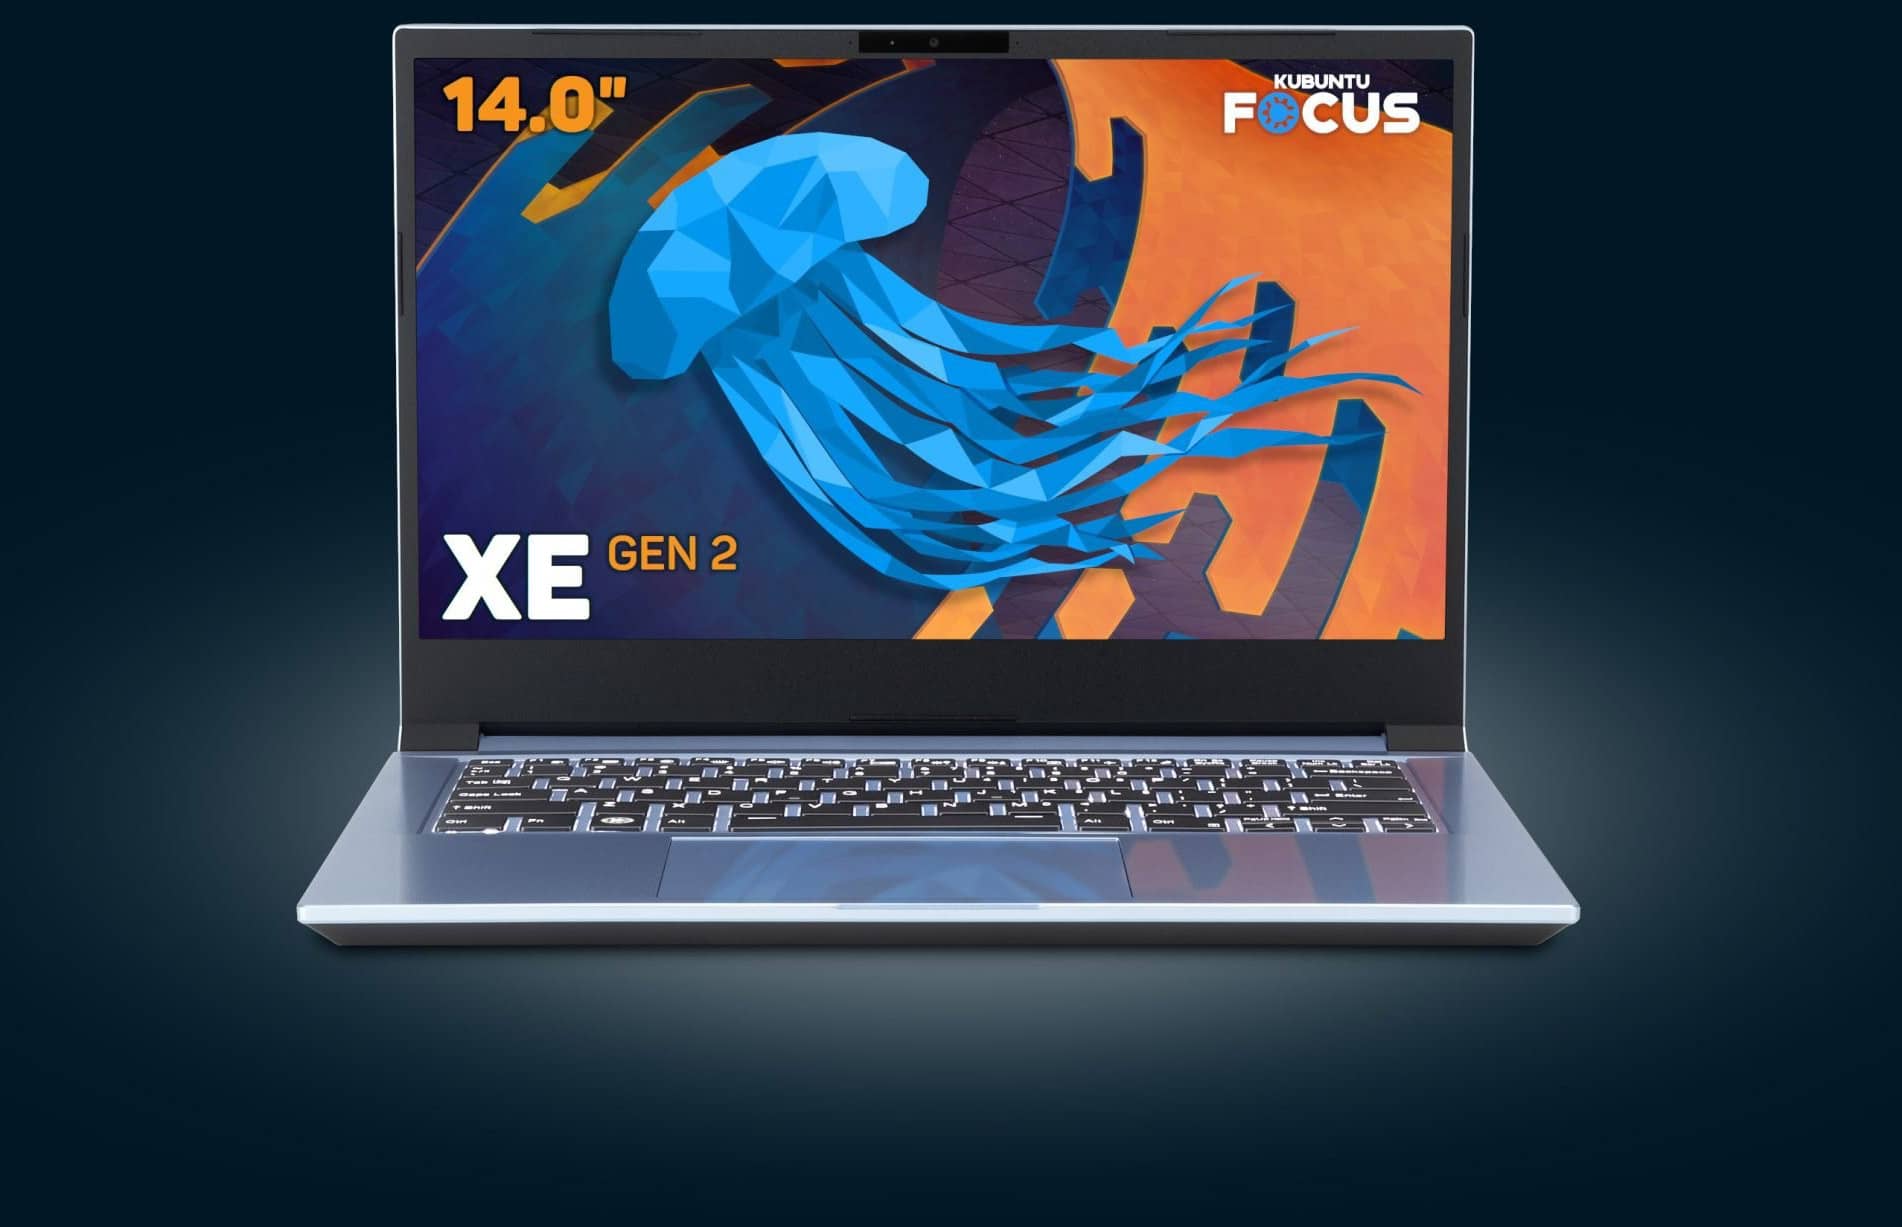 Представлен мощный ноутбук Kubuntu Focus XE Gen 2